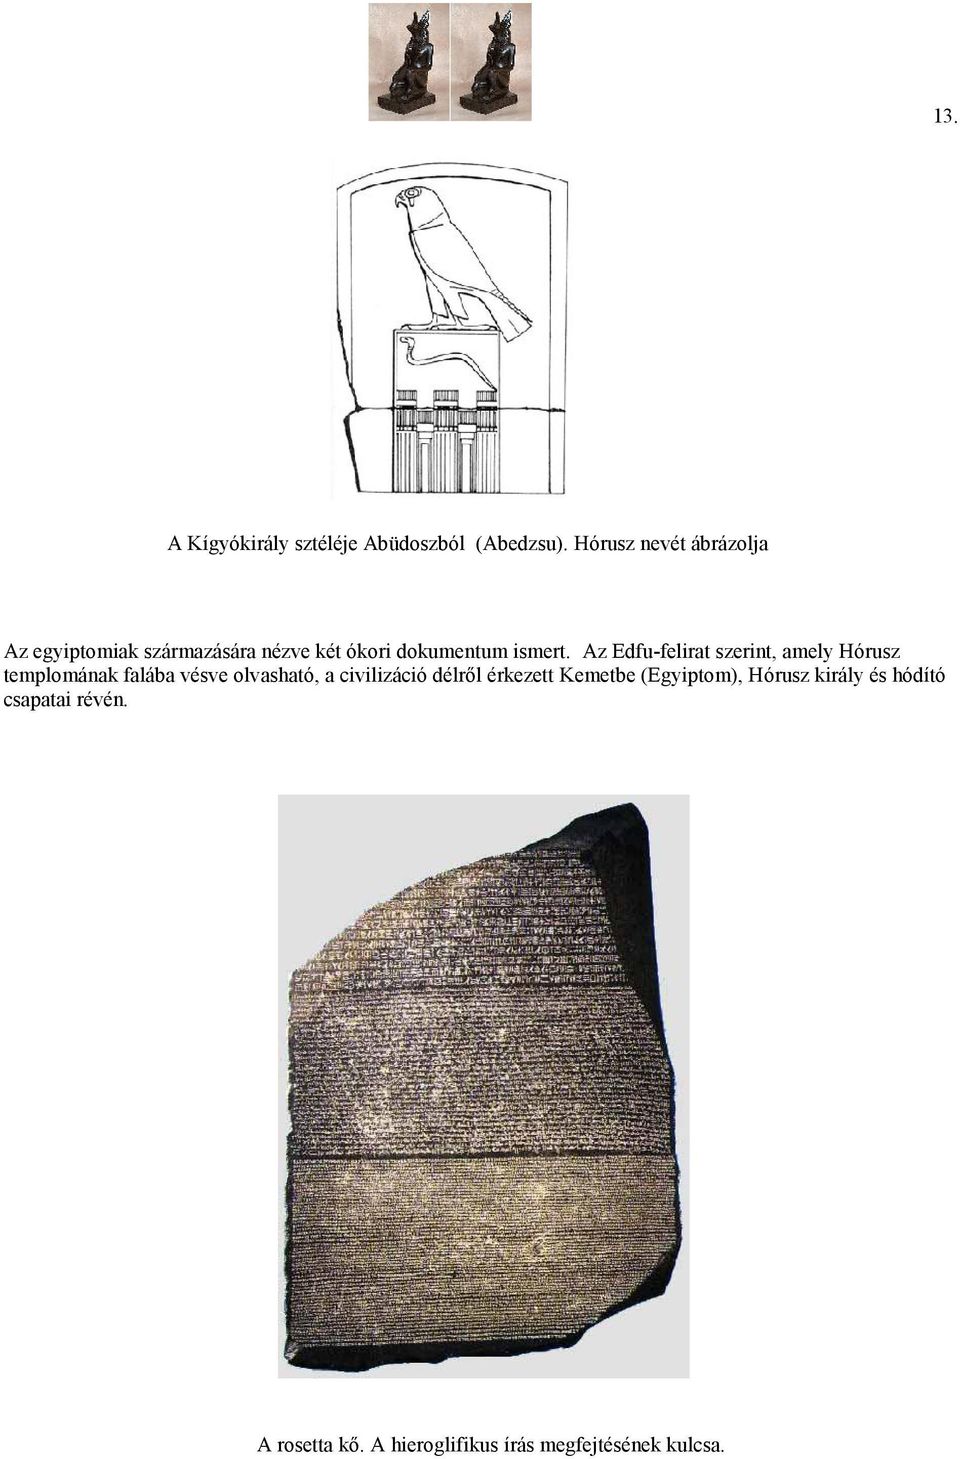 Az Edfu-felirat szerint, amely Hórusz templomának falába vésve olvasható, a civilizáció